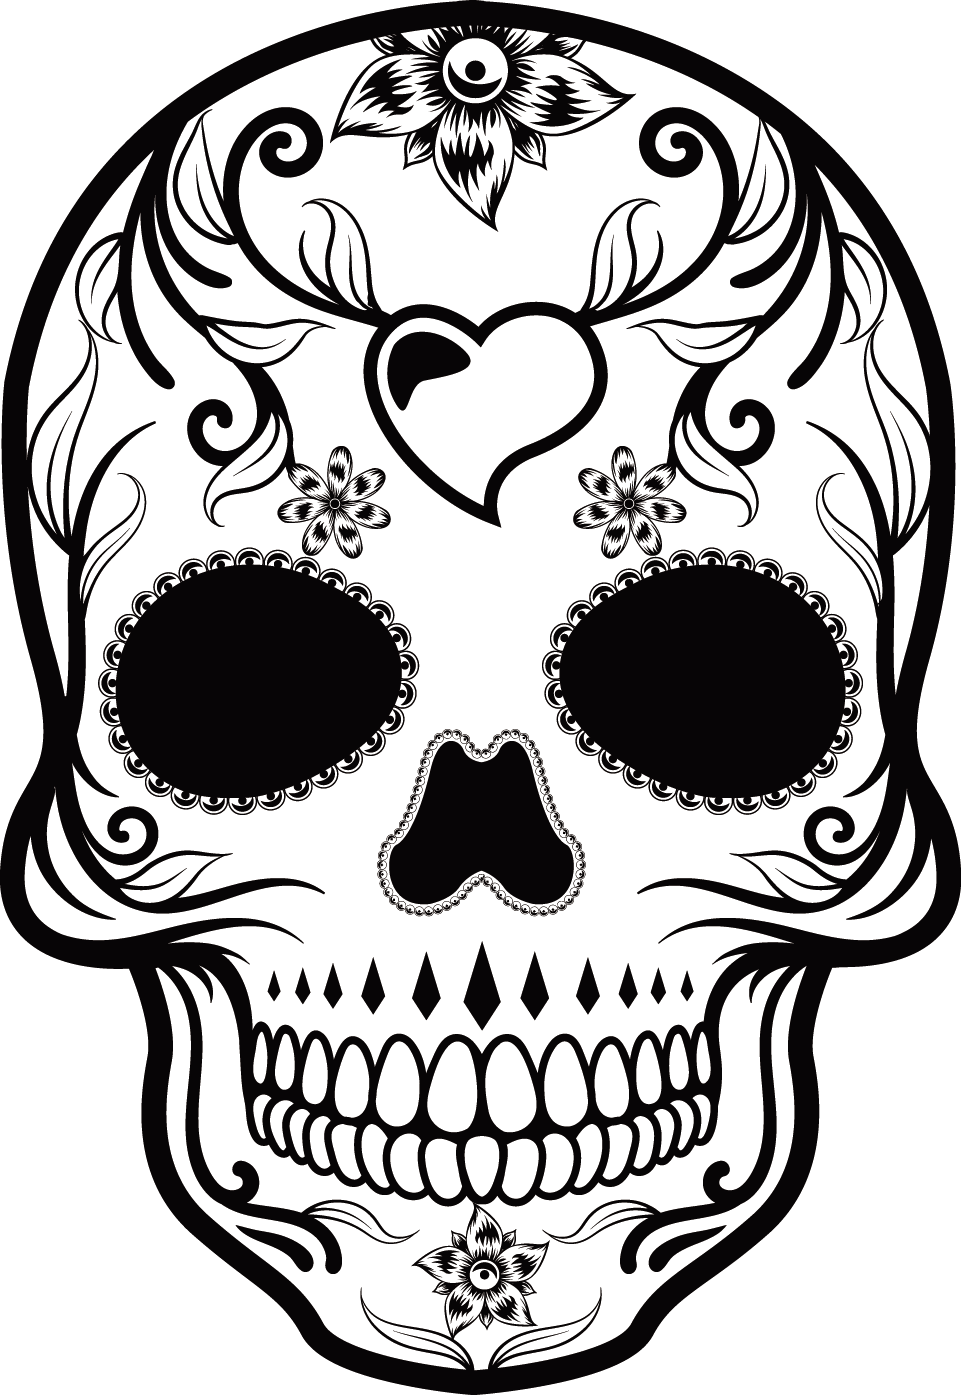 Cuisine Arts Mexican Skull Calavera Head Visual PNG Image